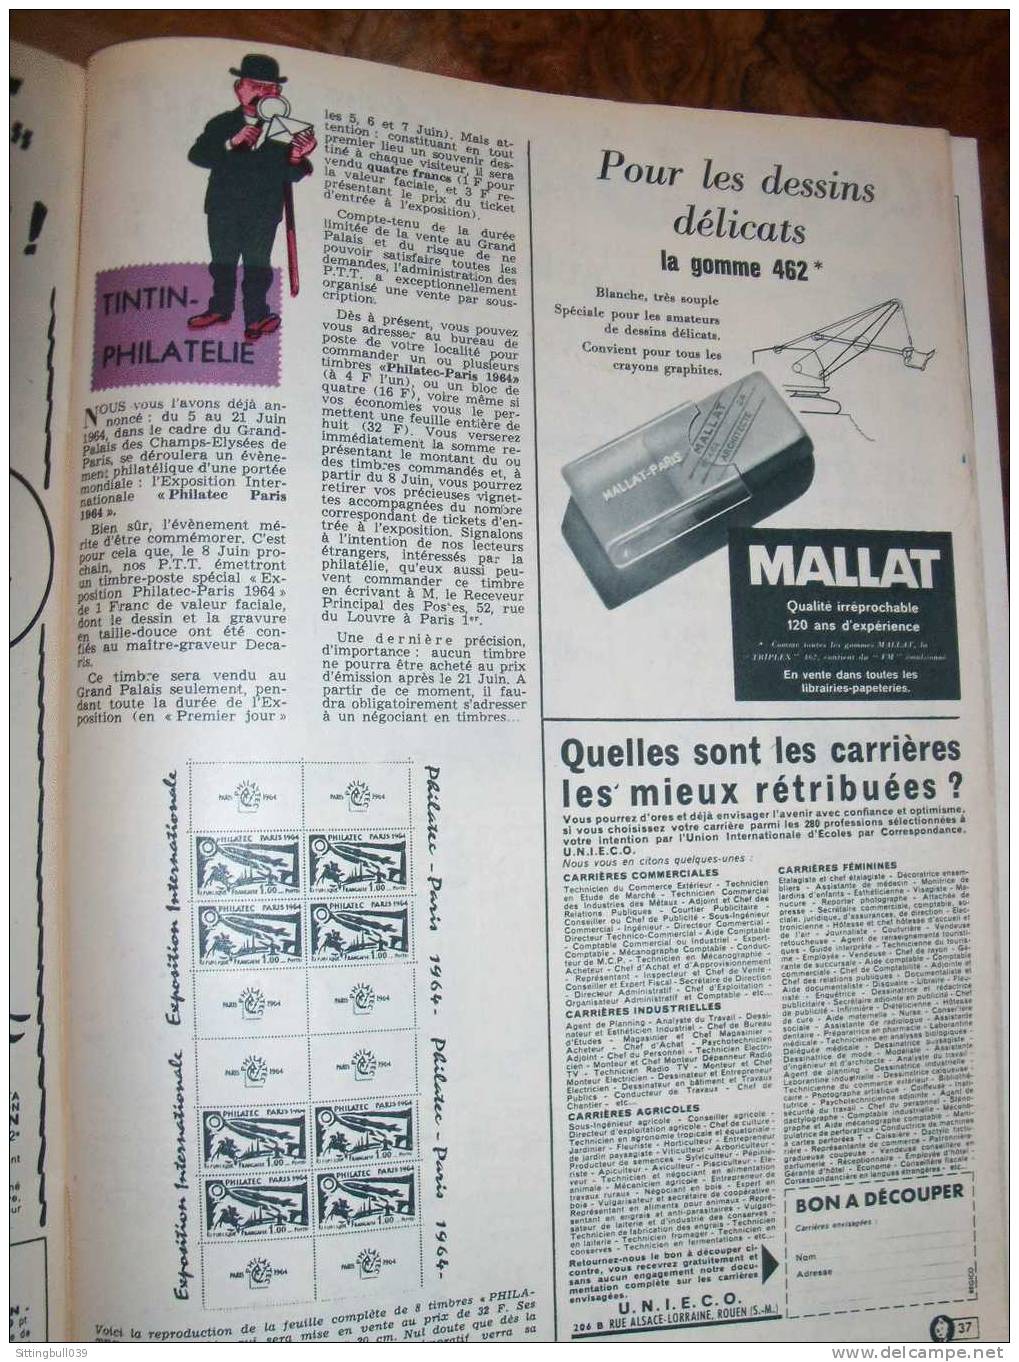 TINTIN N° 810 du 30 avr. 1964. Tintin et Milou en 1ère de couverture + Grand Jeu-Concours 1964.